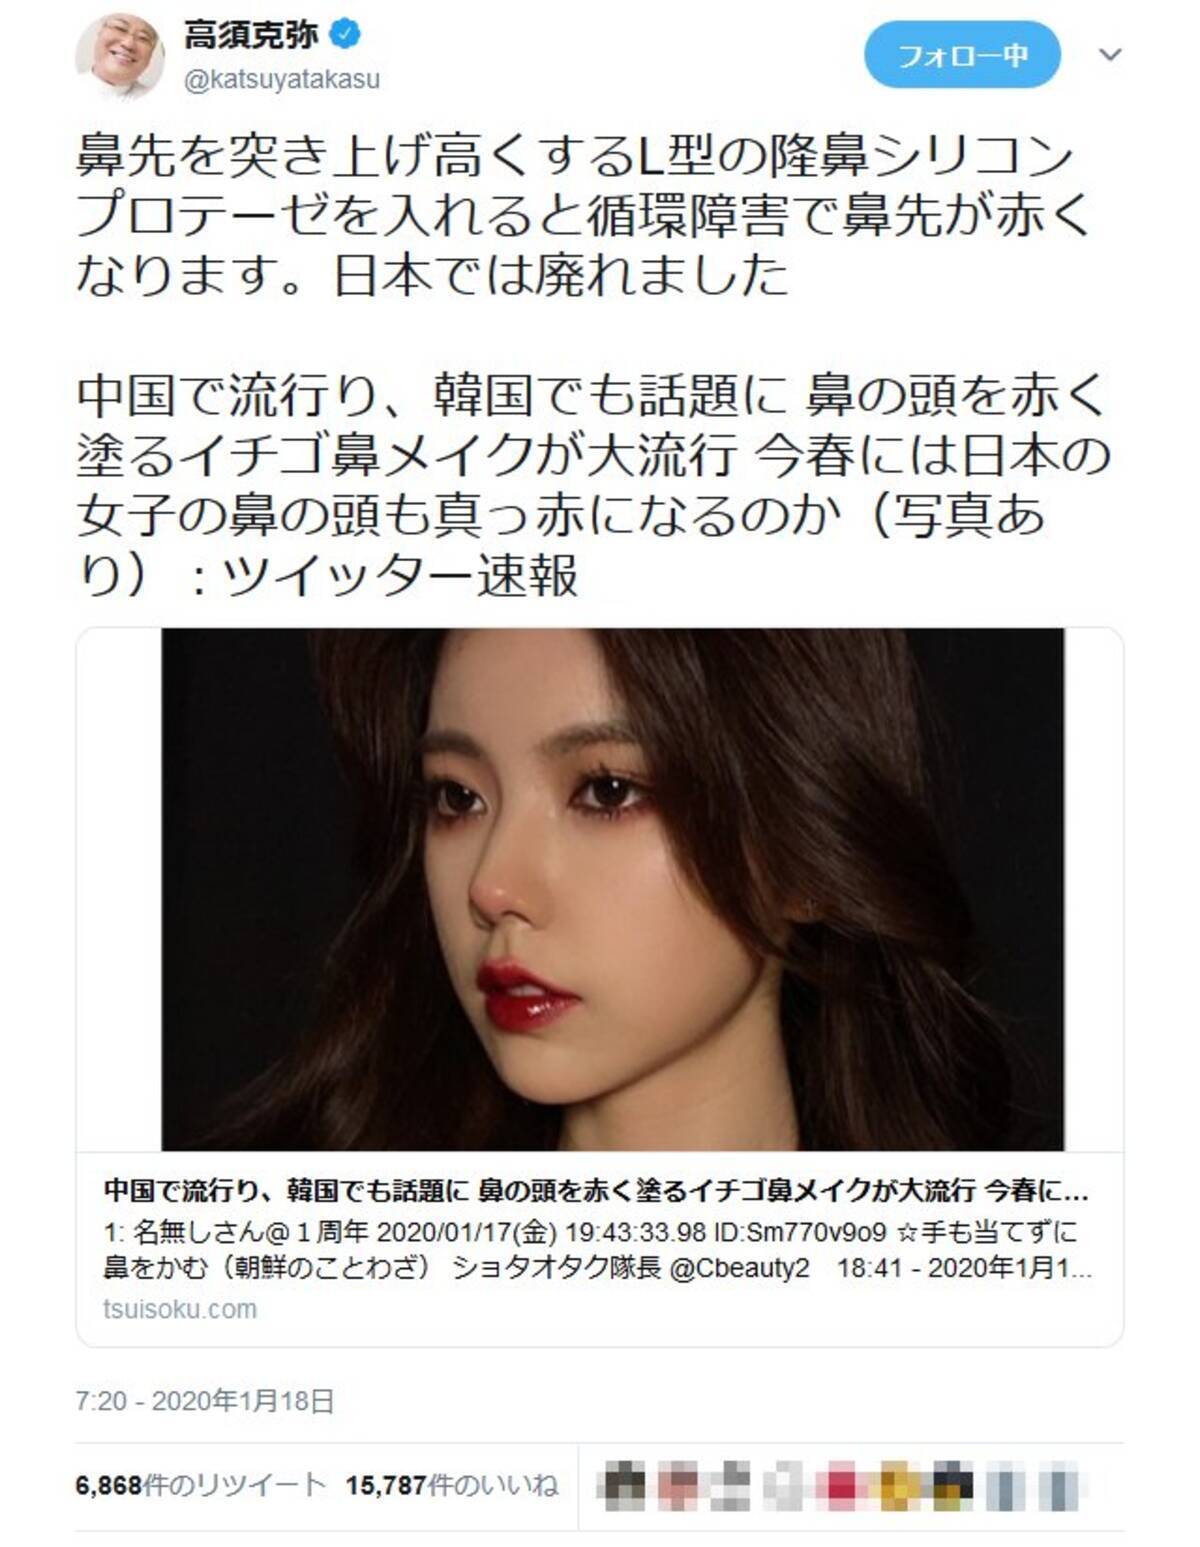 中国 韓国で鼻の頭を赤く塗るイチゴ鼻メイクが流行 という記事への高須克弥院長のツイートが大反響 年1月19日 エキサイトニュース